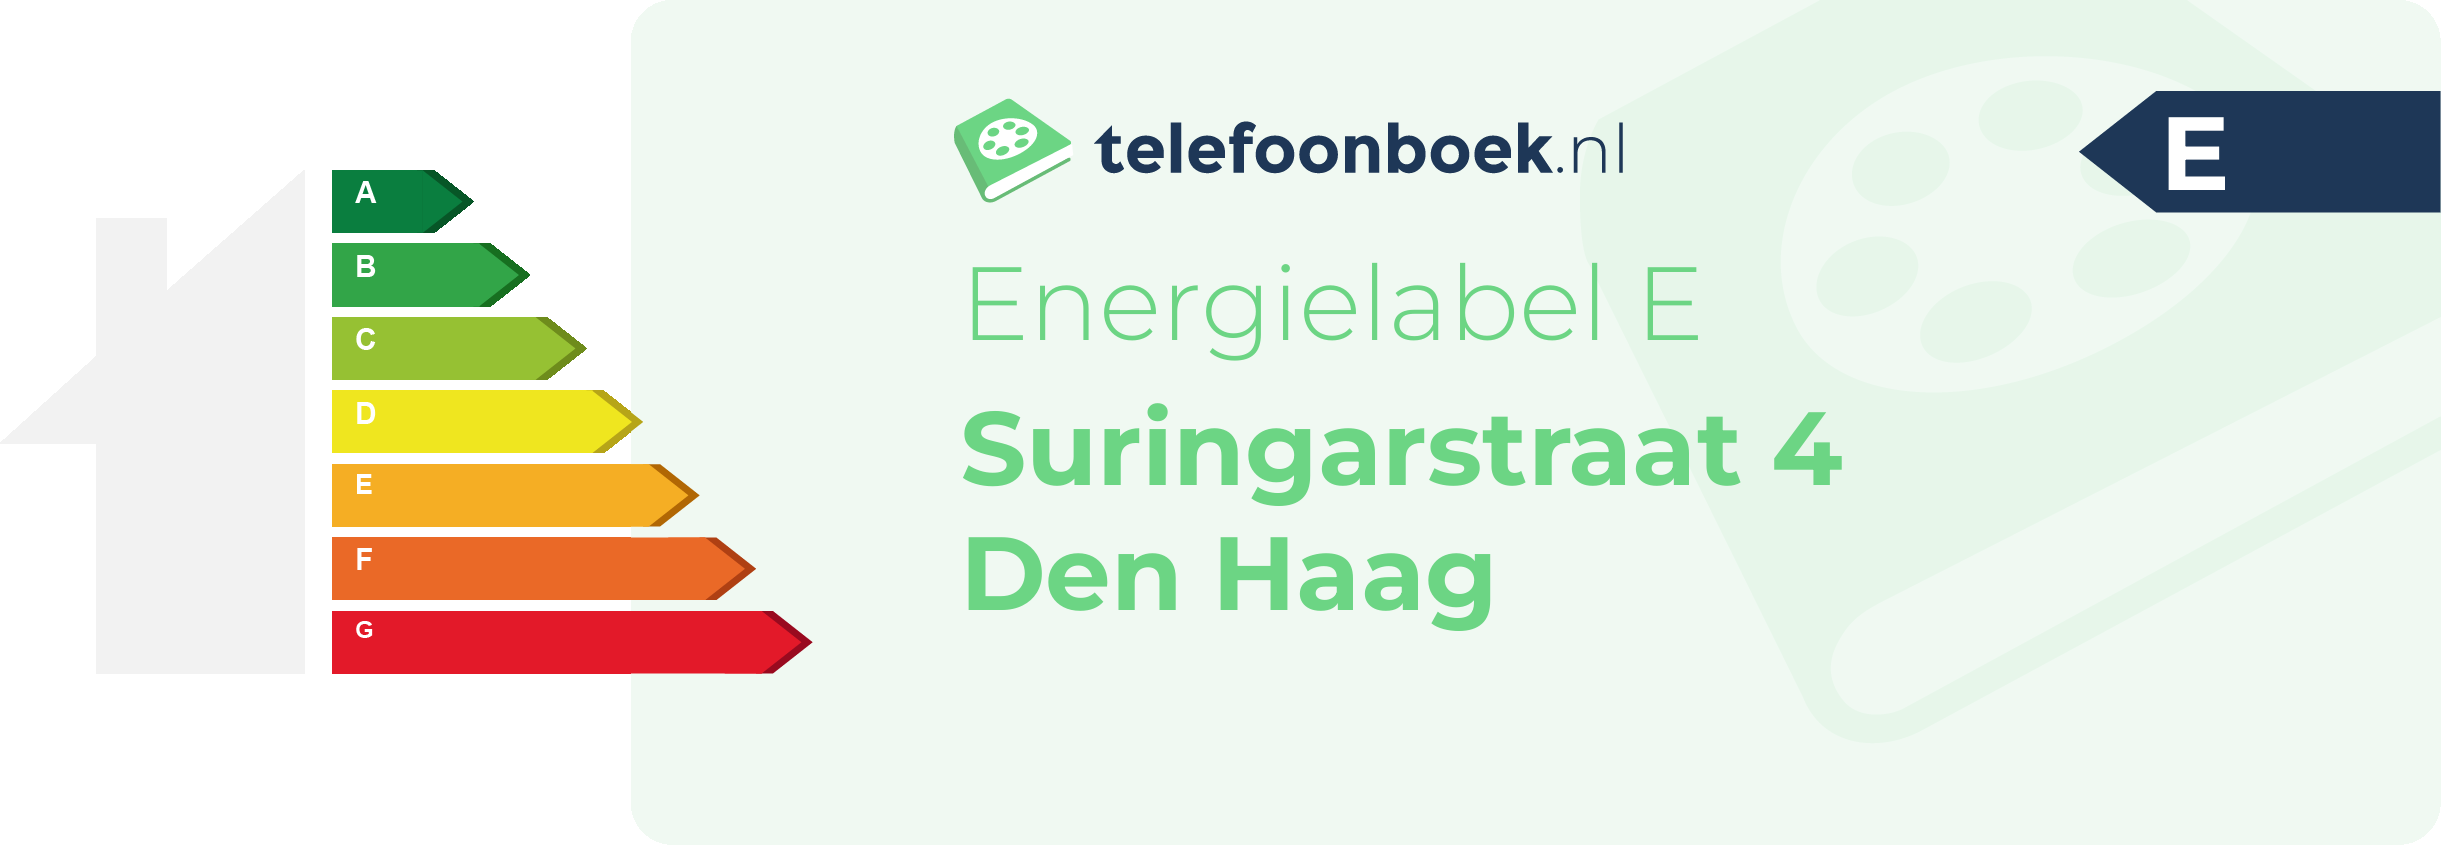 Energielabel Suringarstraat 4 Den Haag